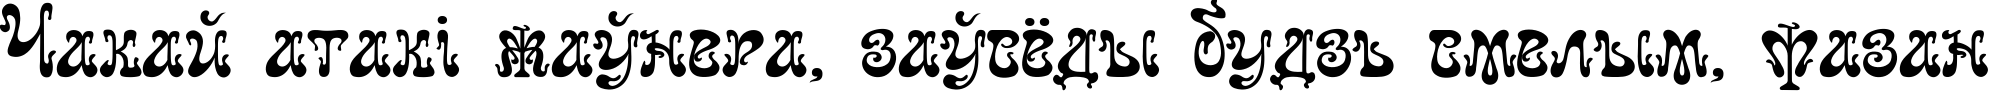 Пример написания шрифтом Juvelir Nouveau текста на белорусском